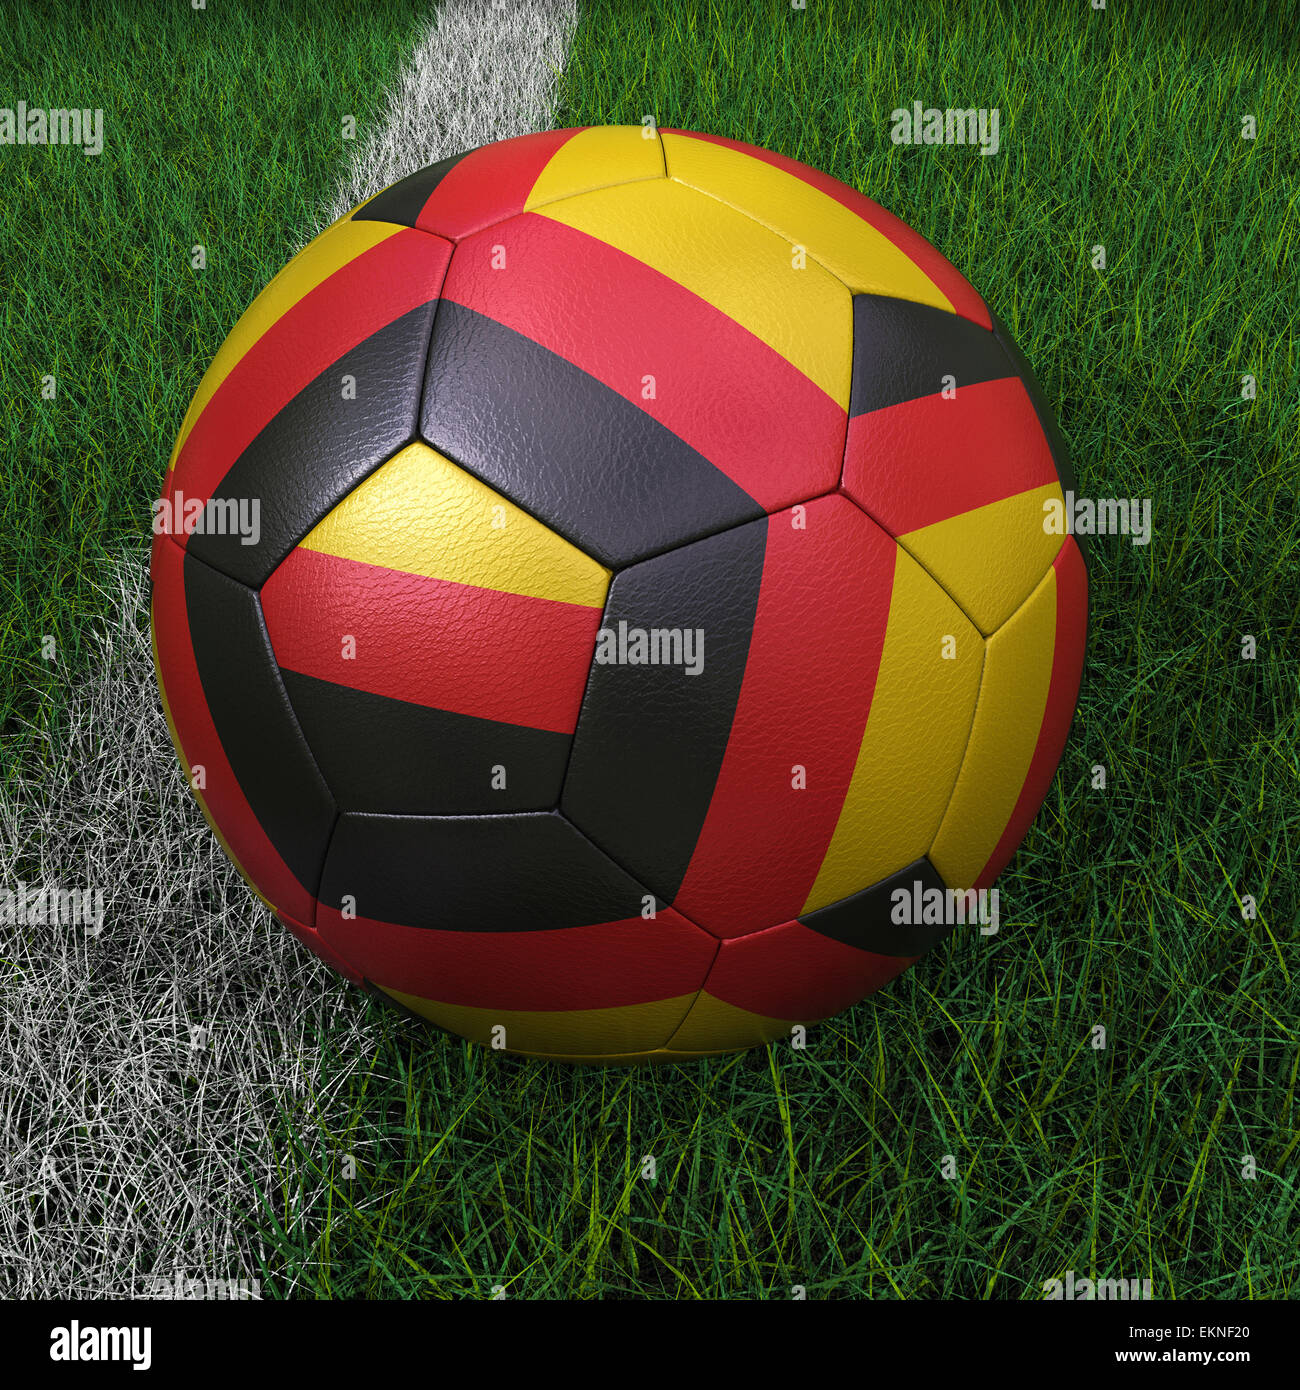 Pelota de futbol 3d alemania fotografías e imágenes de alta resolución -  Página 3 - Alamy